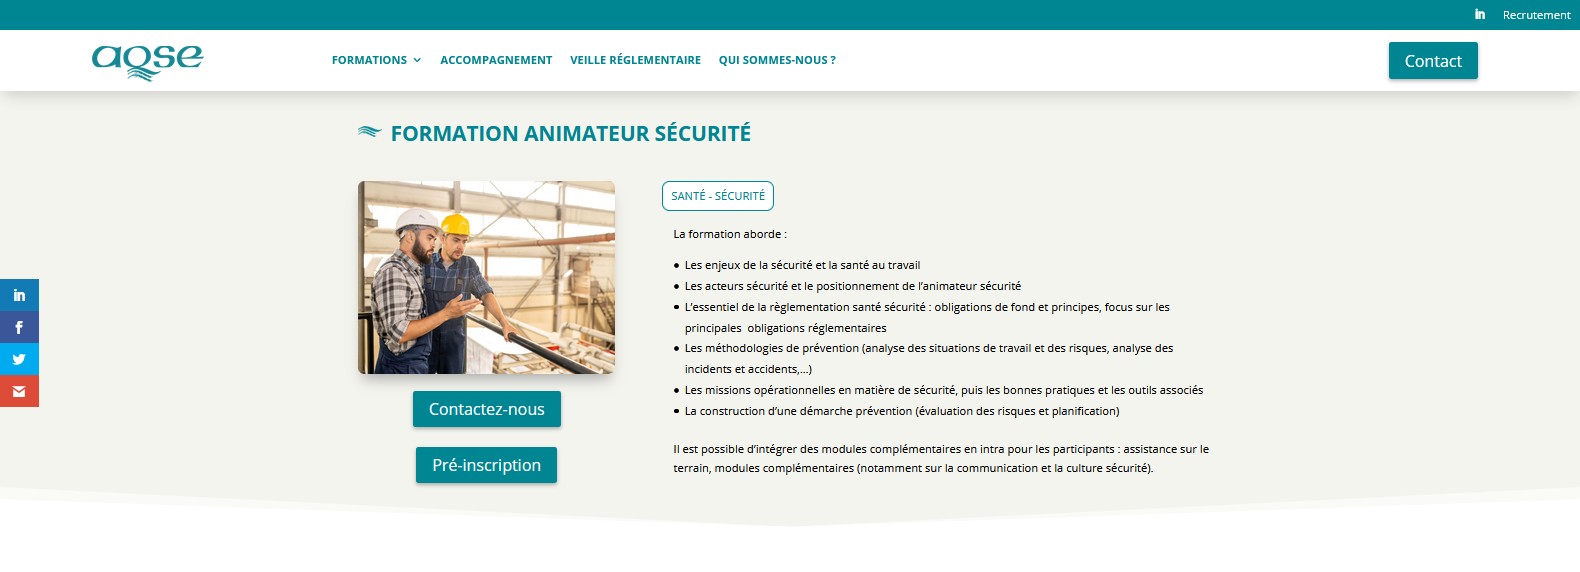 AQSE-france.fr Formation animateur sécurité